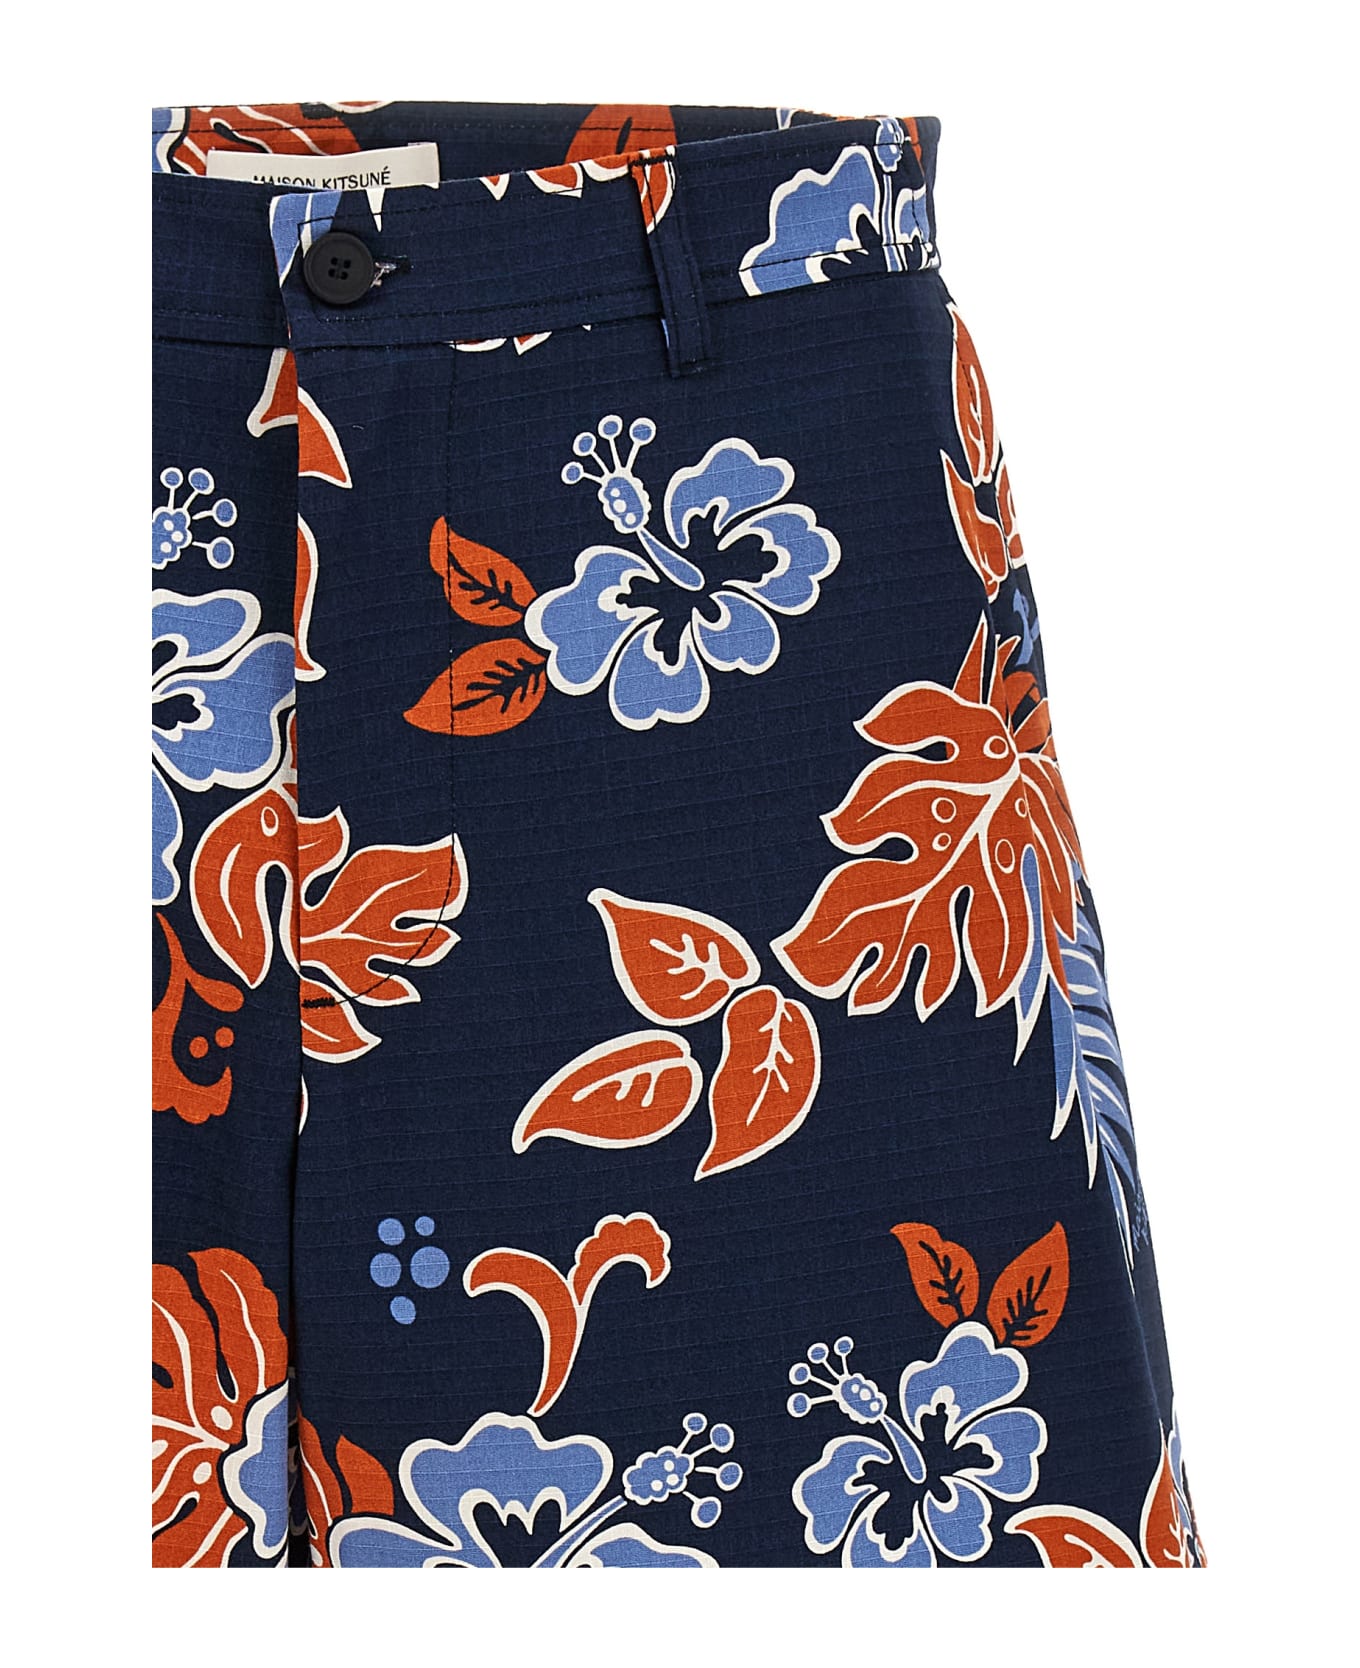 Maison Kitsuné 'board' Bermuda Shorts - Multicolor ショートパンツ